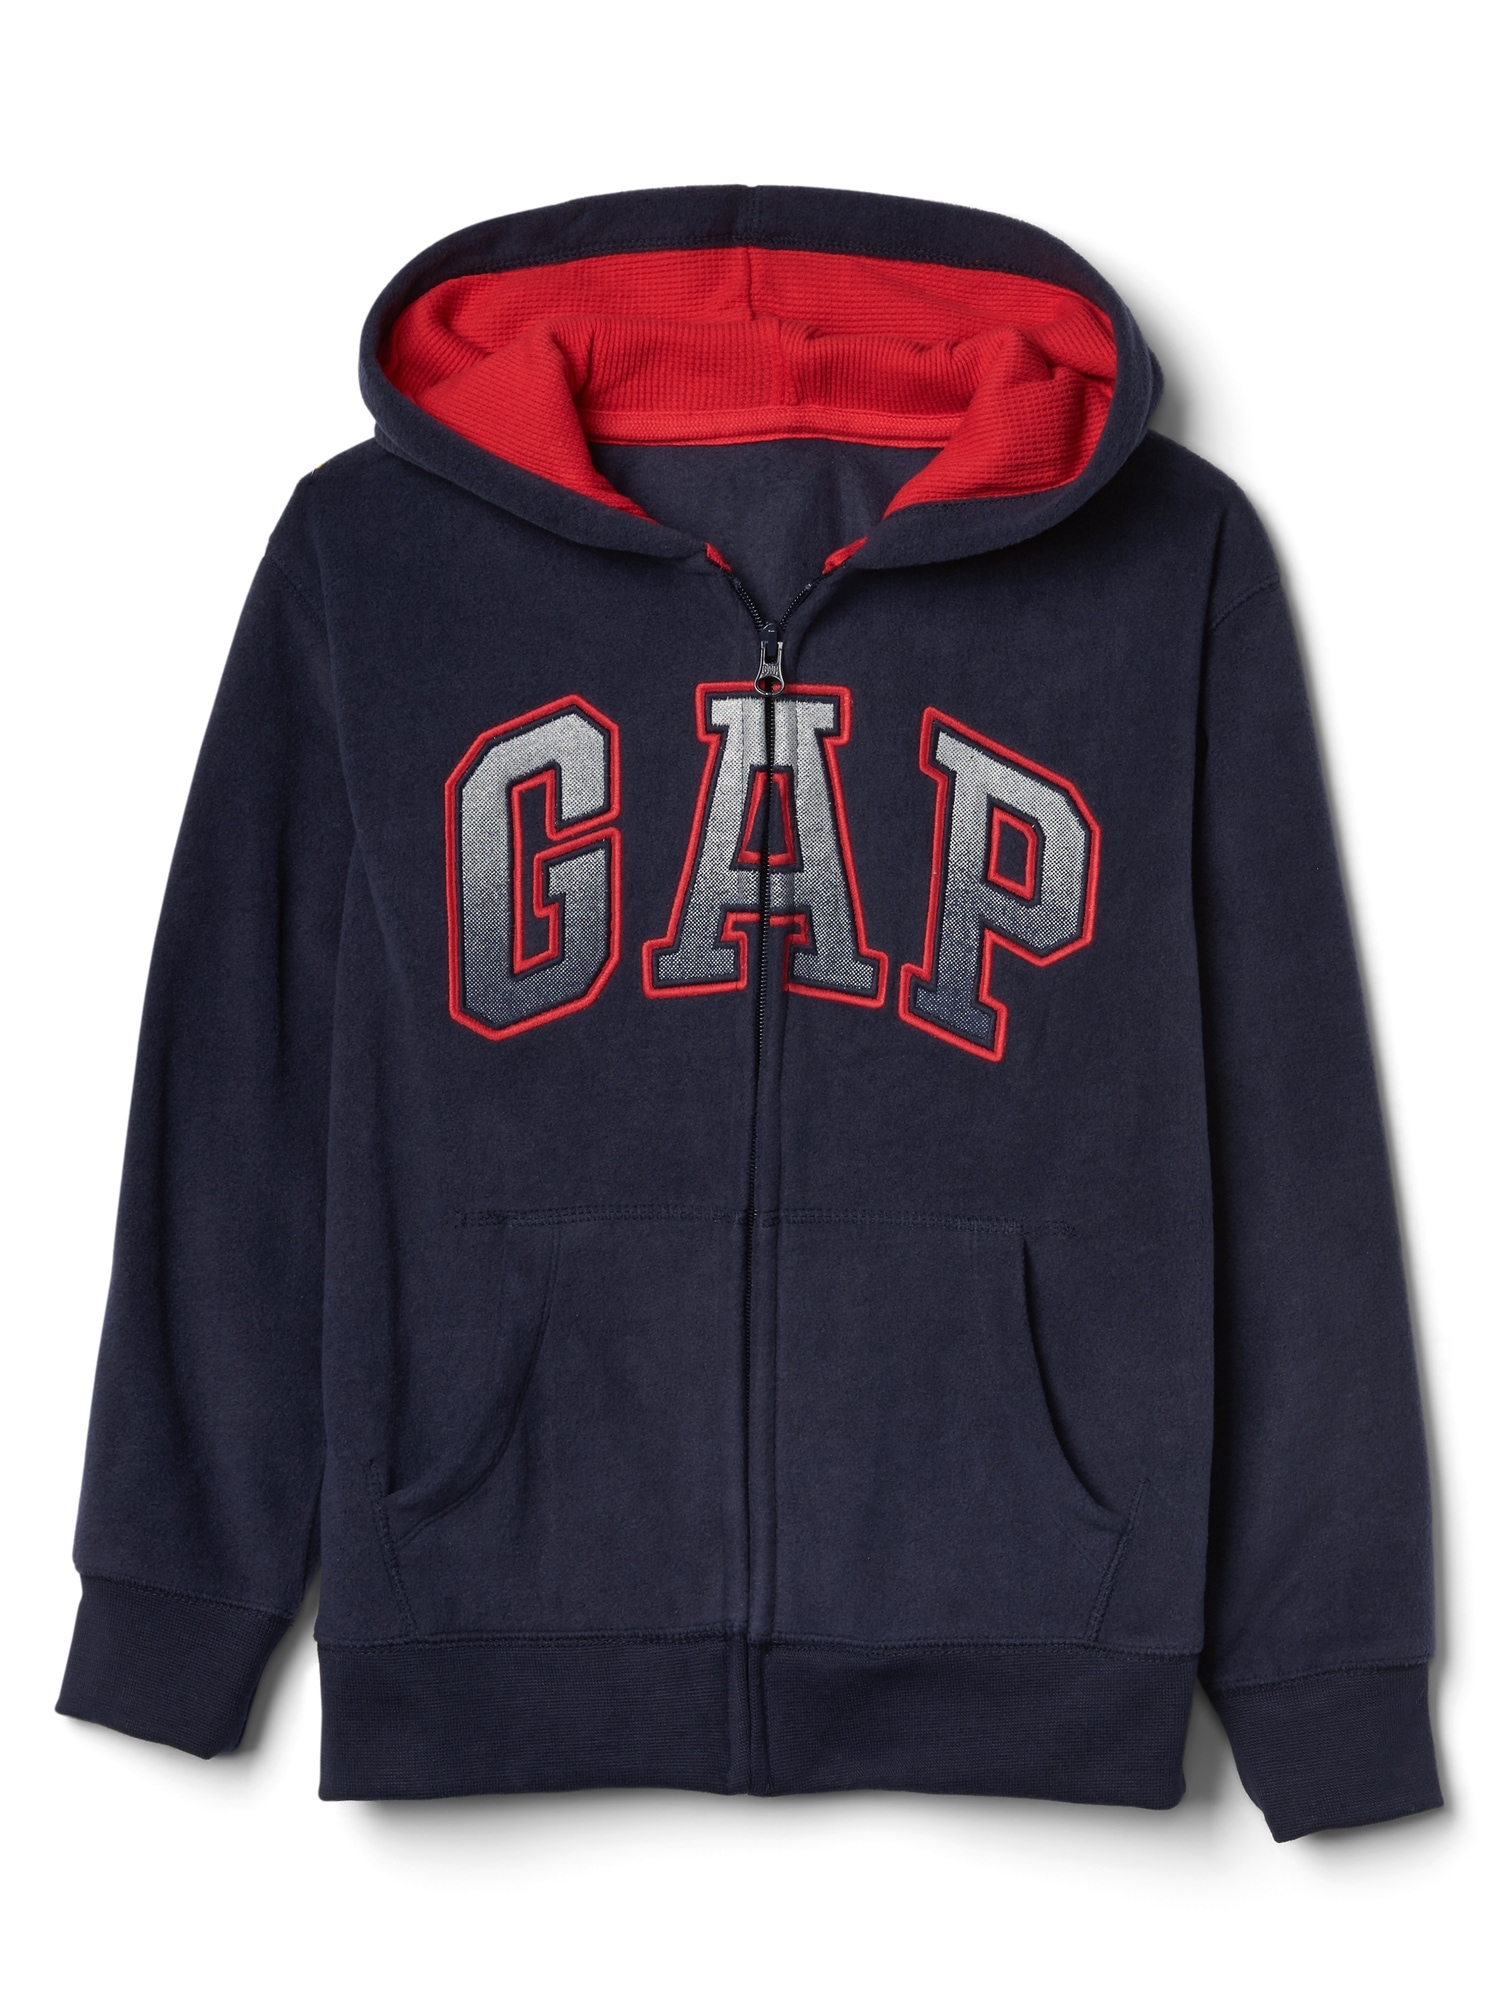 Pro Fleece logo zip hoodie | Gap